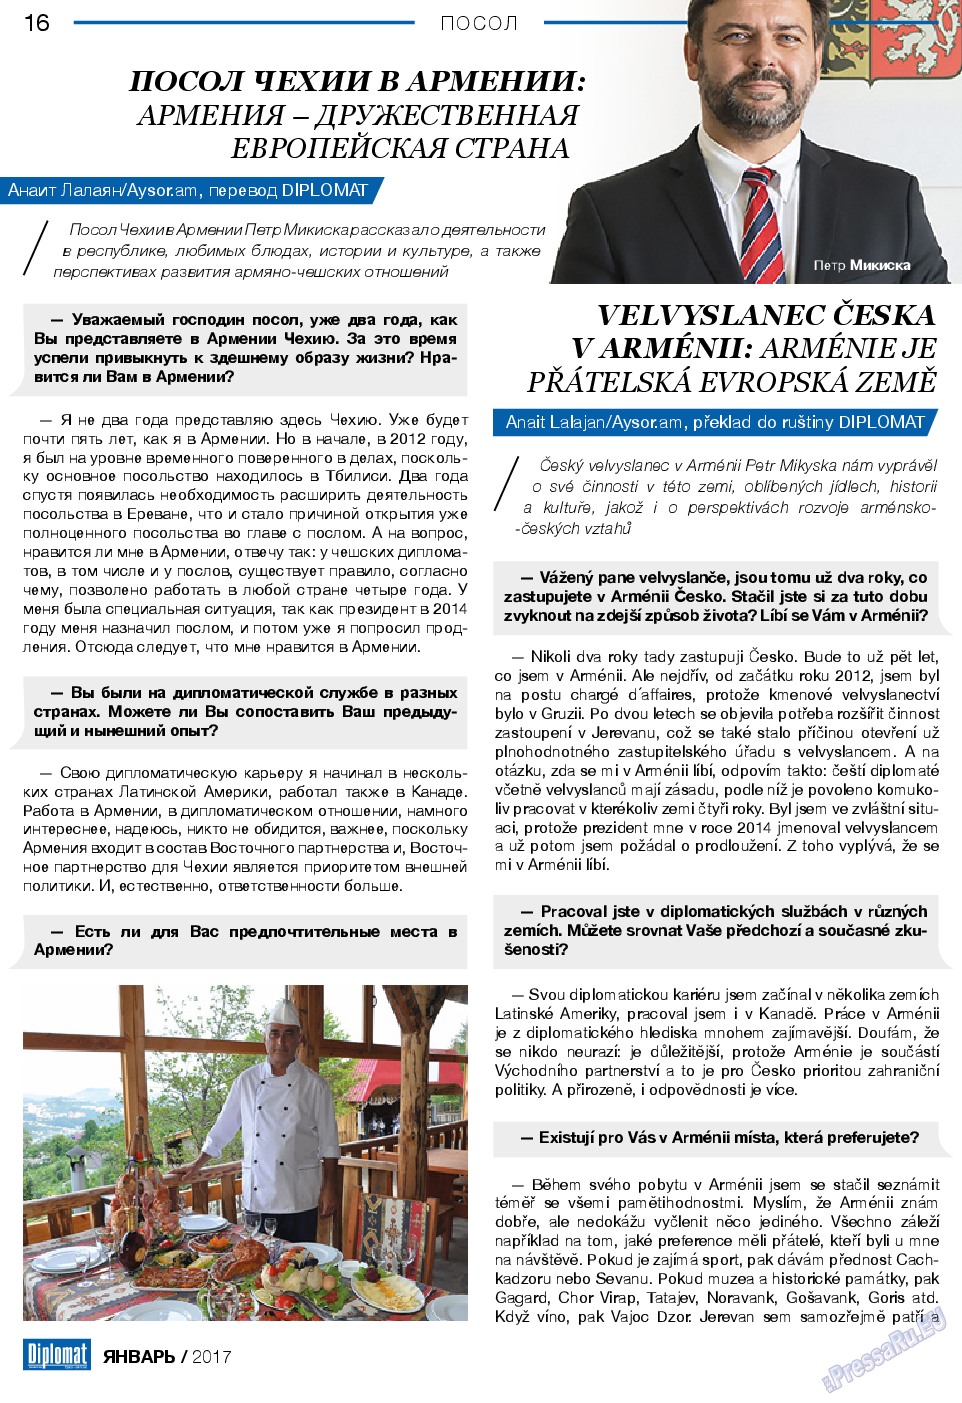 Diplomat, газета. 2017 №88 стр.16